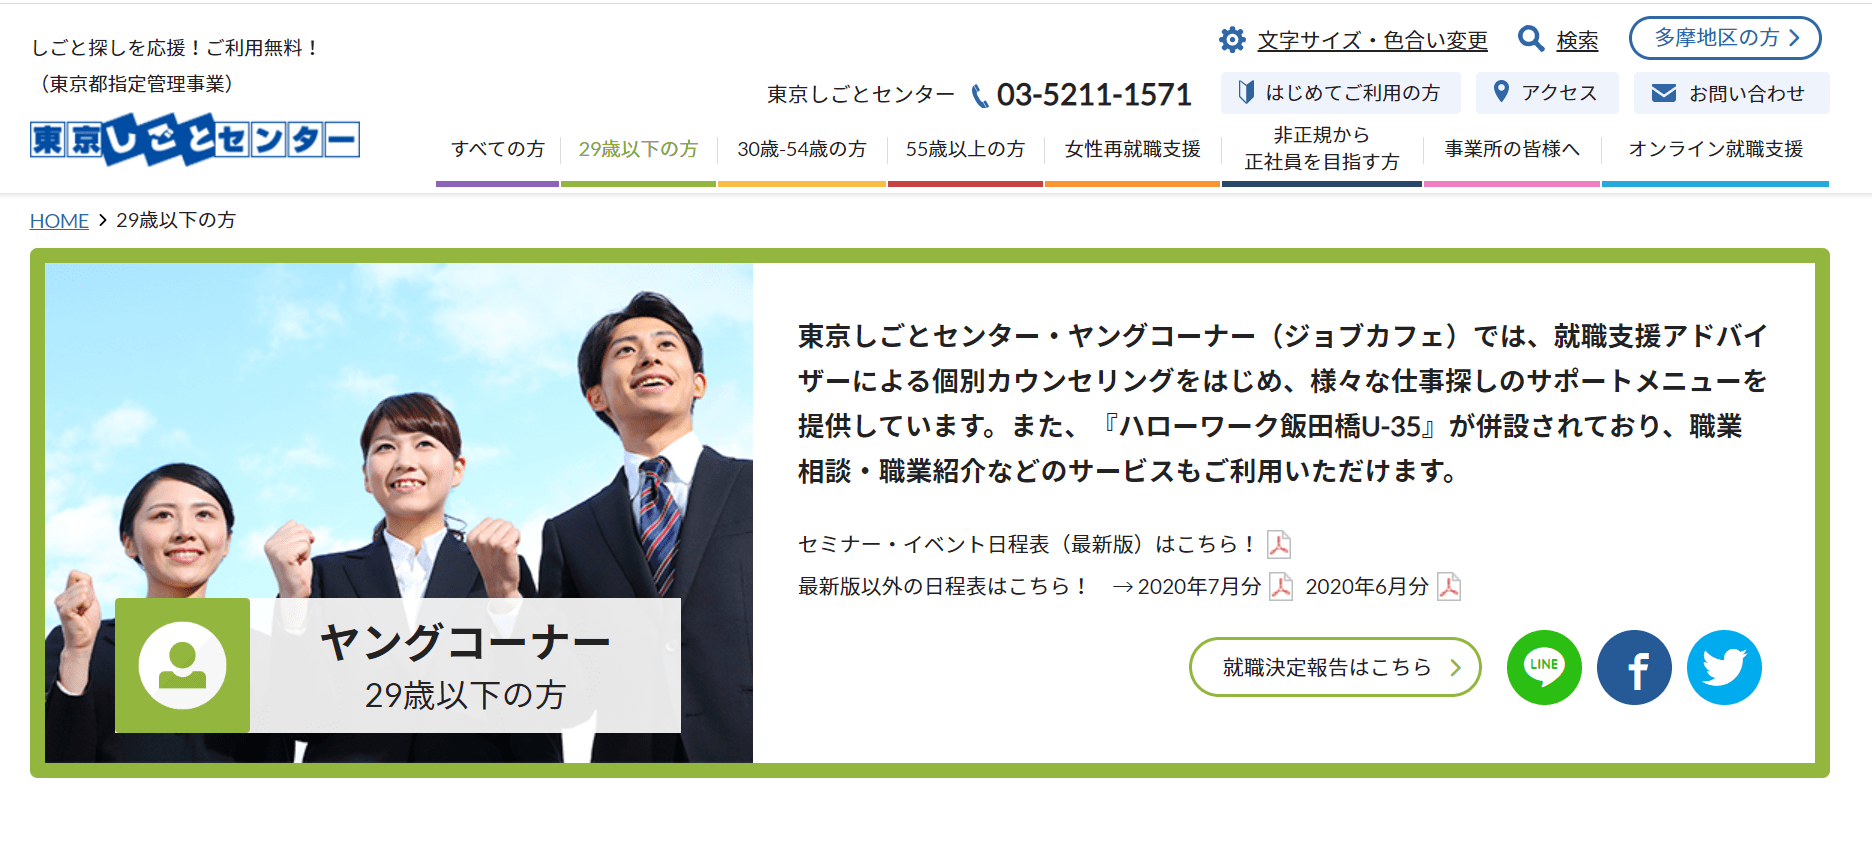 東京しごとセンターのホームページ